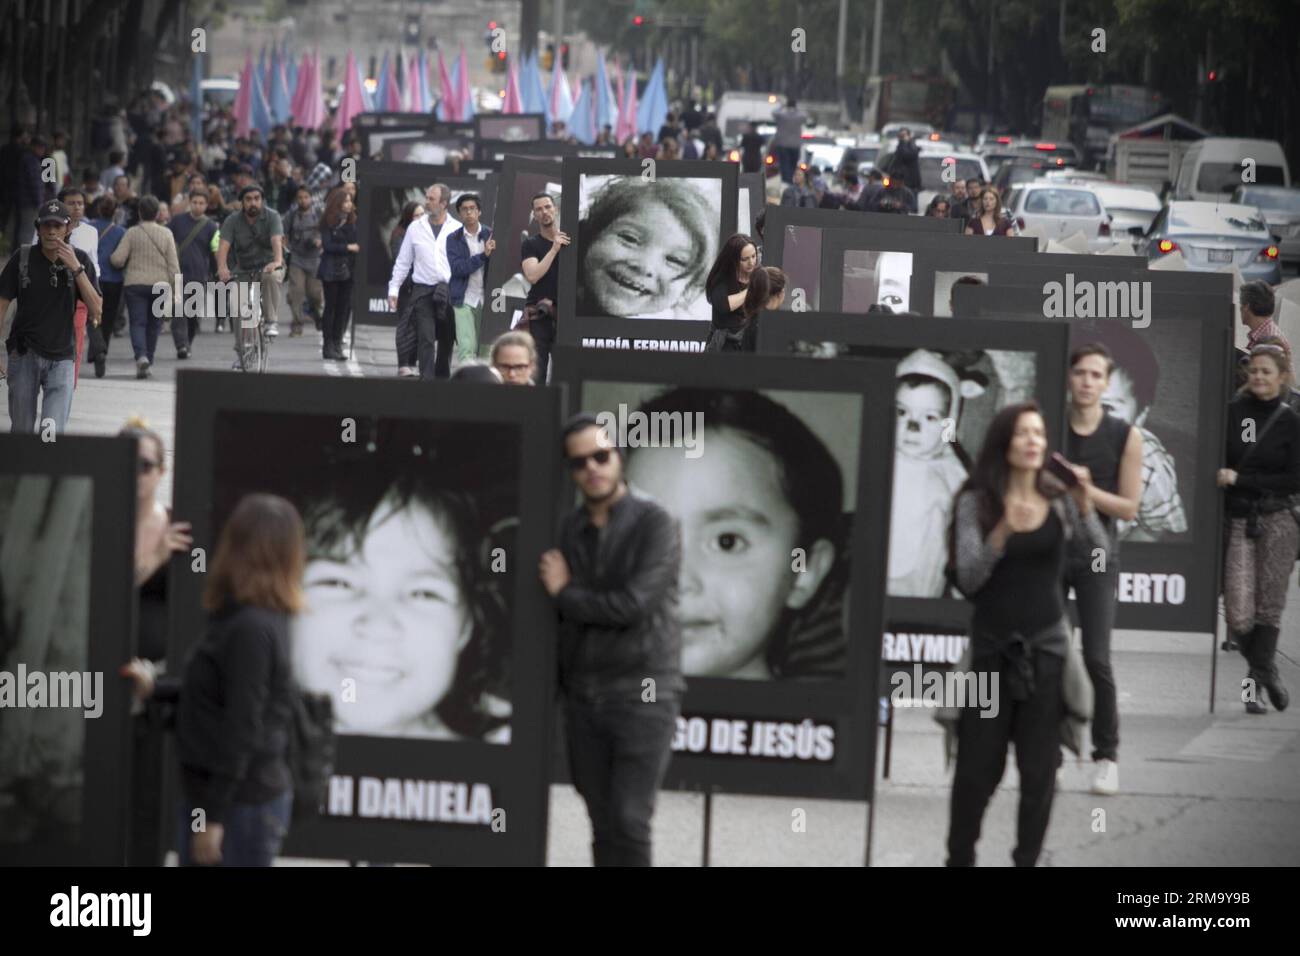 (140606) -- MEXIKO-STADT, 5. Juni 2014 (Xinhua) -- Menschen halten Fotos von Opfern des Feuers in der ABC-Kinderkrippe während einer Kundgebung in Mexiko-Stadt, Hauptstadt von Mexiko, 5. Juni 2014. Die Bewohner nehmen an einer Kundgebung zum 5. Jahrestag des Brandes in der ABC-Kinderkrippe in Sonora, Mexiko, Teil, bei der 49 Kinder starben. (Xinhua/Alejandro Ayala) (zhf) MEXIKO-MEXIKO-STADT-GESELLSCHAFT-RALLYE PUBLICATIONxNOTxINxCHN Mexiko-Stadt 5. Juni 2014 XINHUA Prominente Halten Fotos von Opfern des Feuers in der ABC Kinderkrippe während einer Rallye in Mexiko-Stadt Hauptstadt von Mexiko 5. Juni 2014 Einwohner nehmen an einer Rallye zu Stockfoto